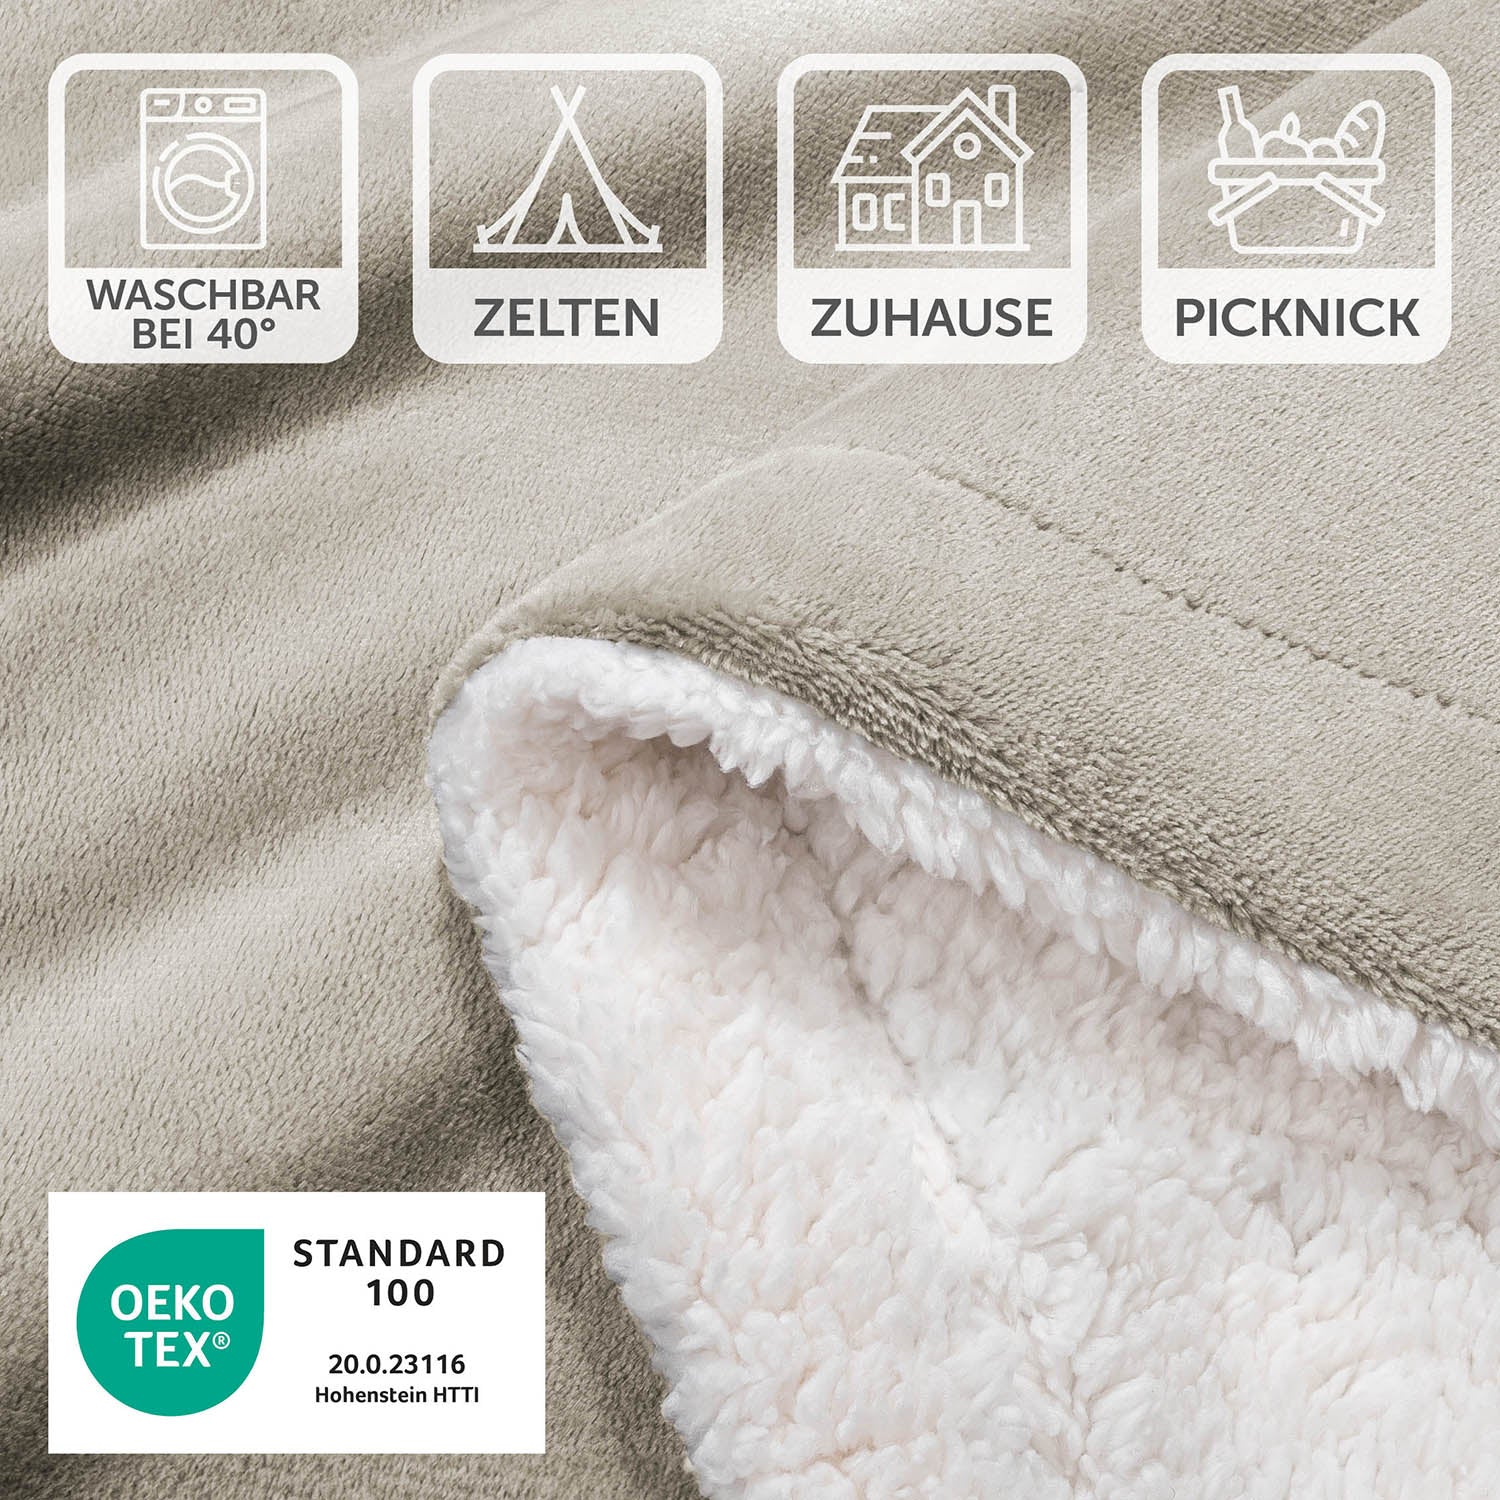 Detailansicht der beigen Decke mit Pflegesymbolen und OEKO-TEX Standard 100 Siegel, waschbar bei 40 Grad, geeignet für Zelten, Zuhause und Picknick.